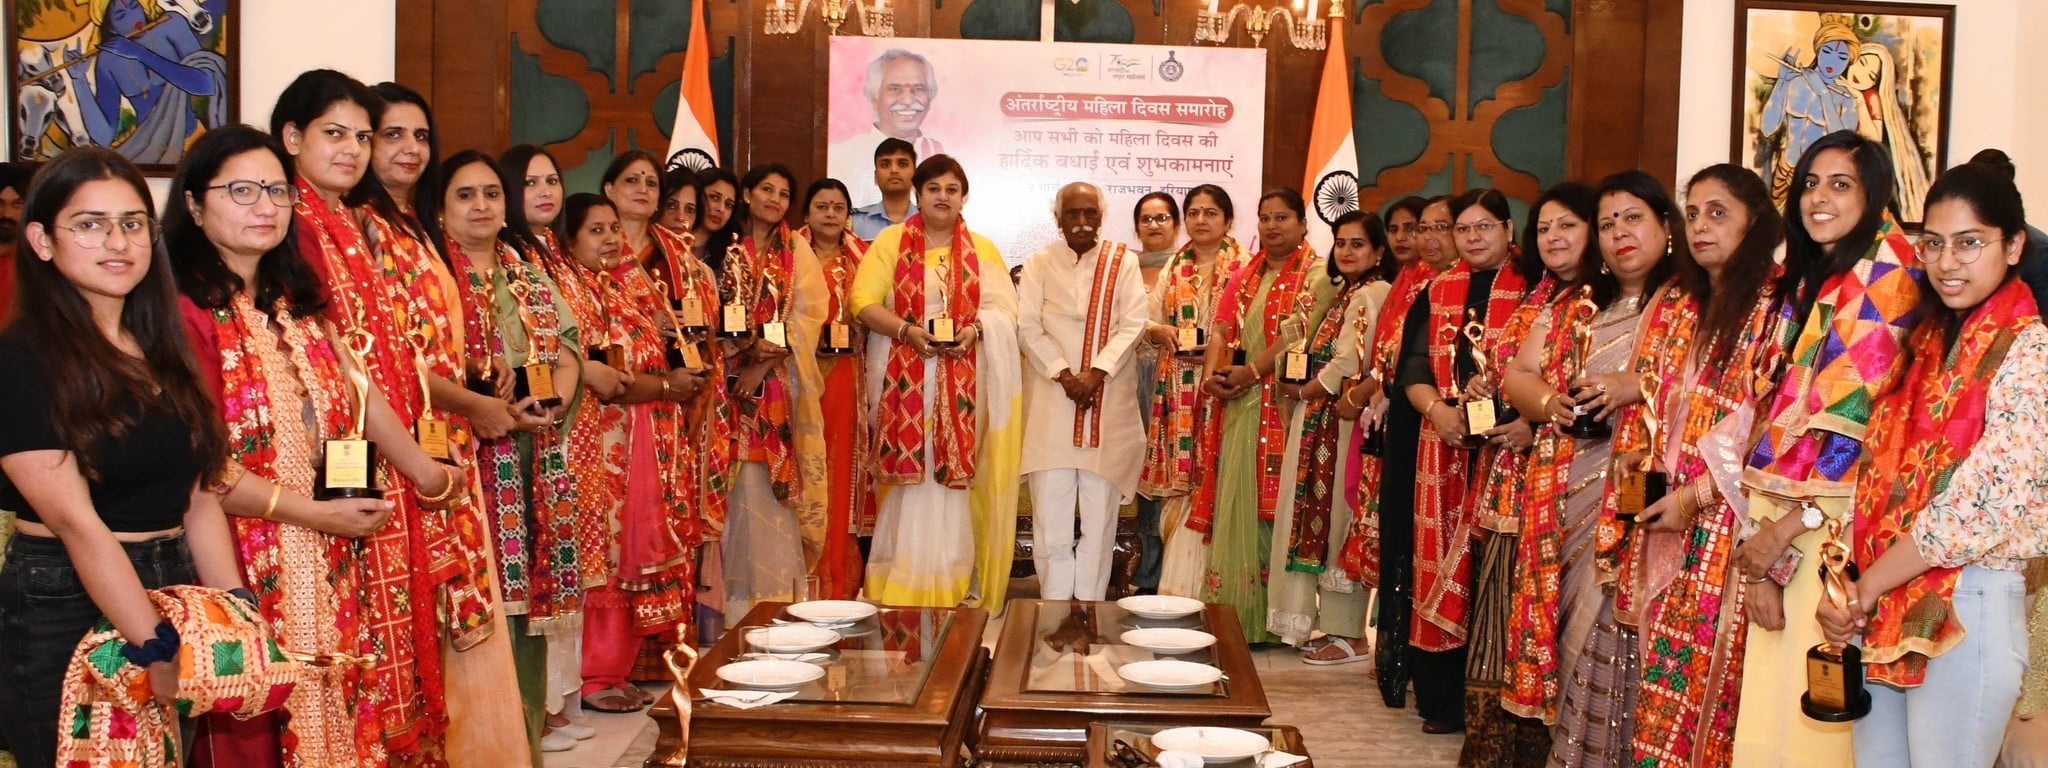 Haryana News : महिला दिवस के उपलक्ष्य में कल करनाल में राज्य स्तरीय सम्मान समारोह